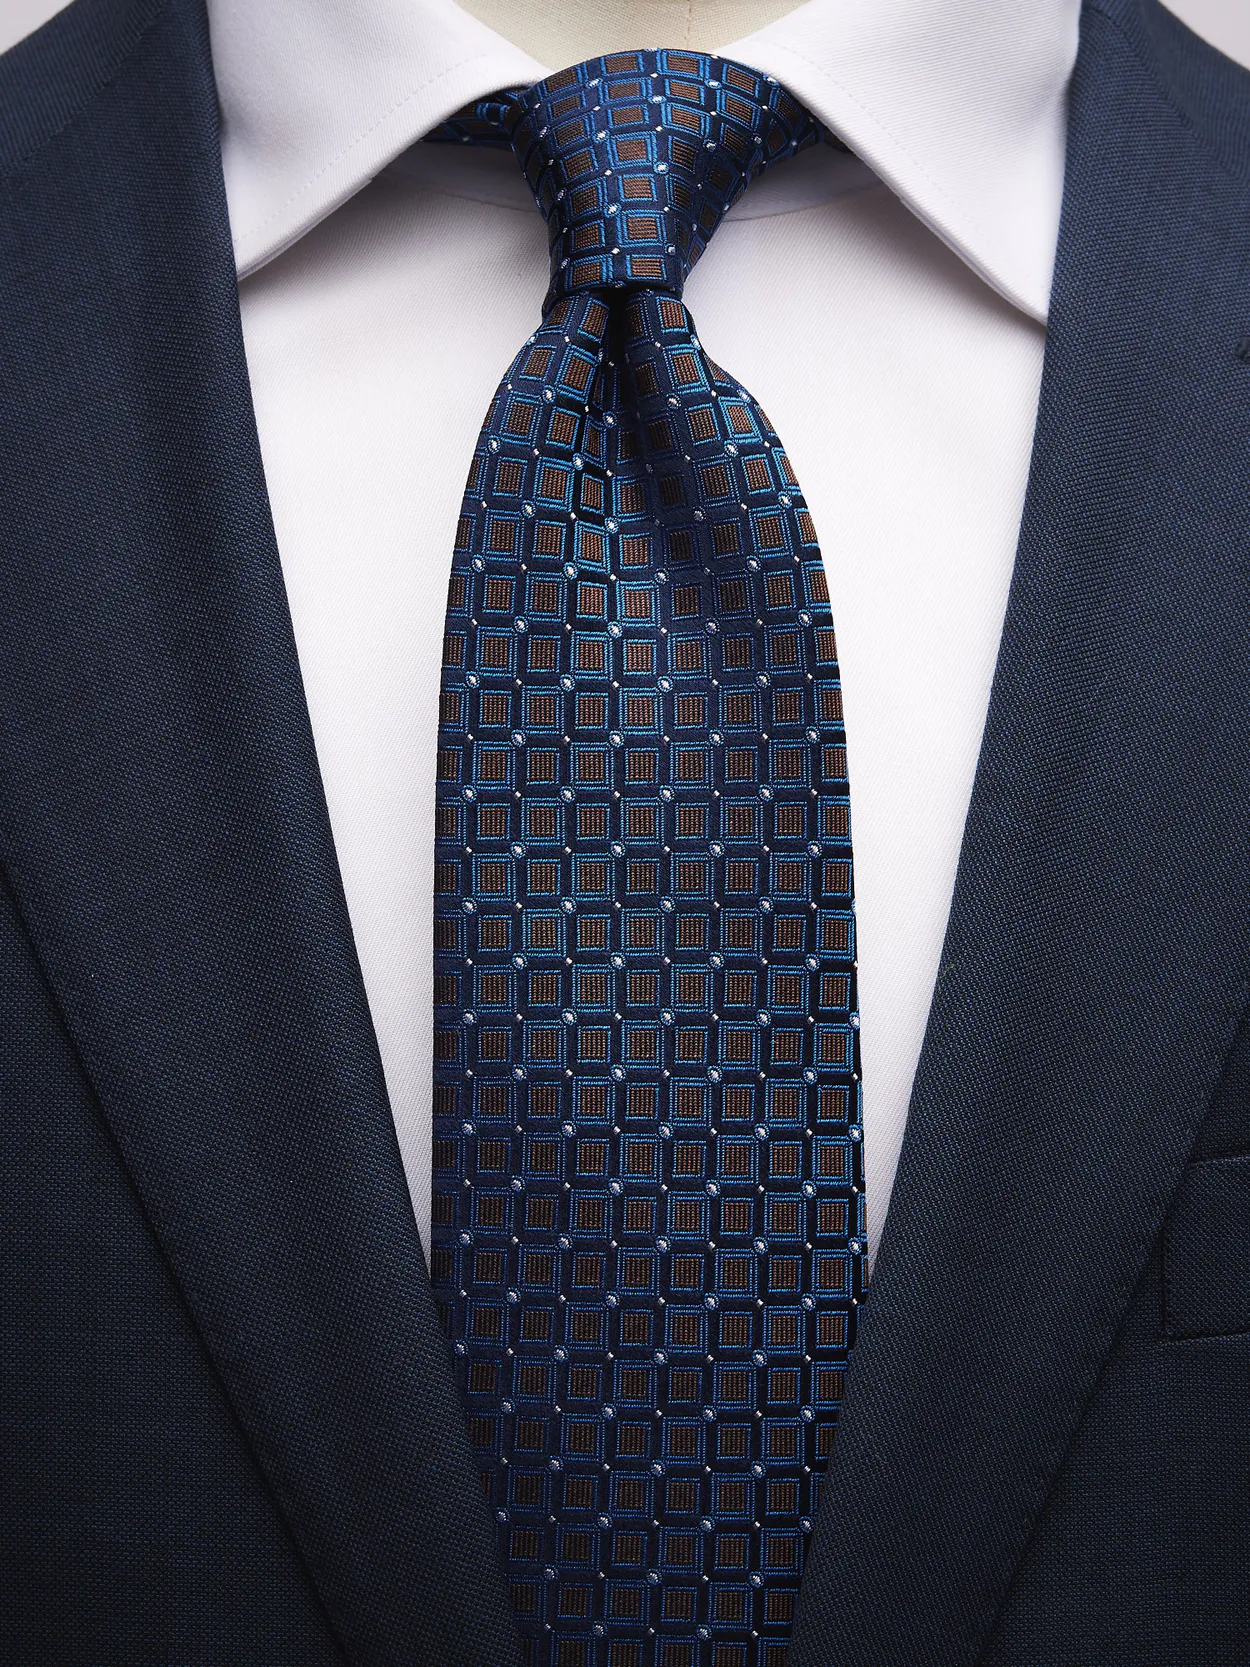 Blue & Brown Tie Geometric